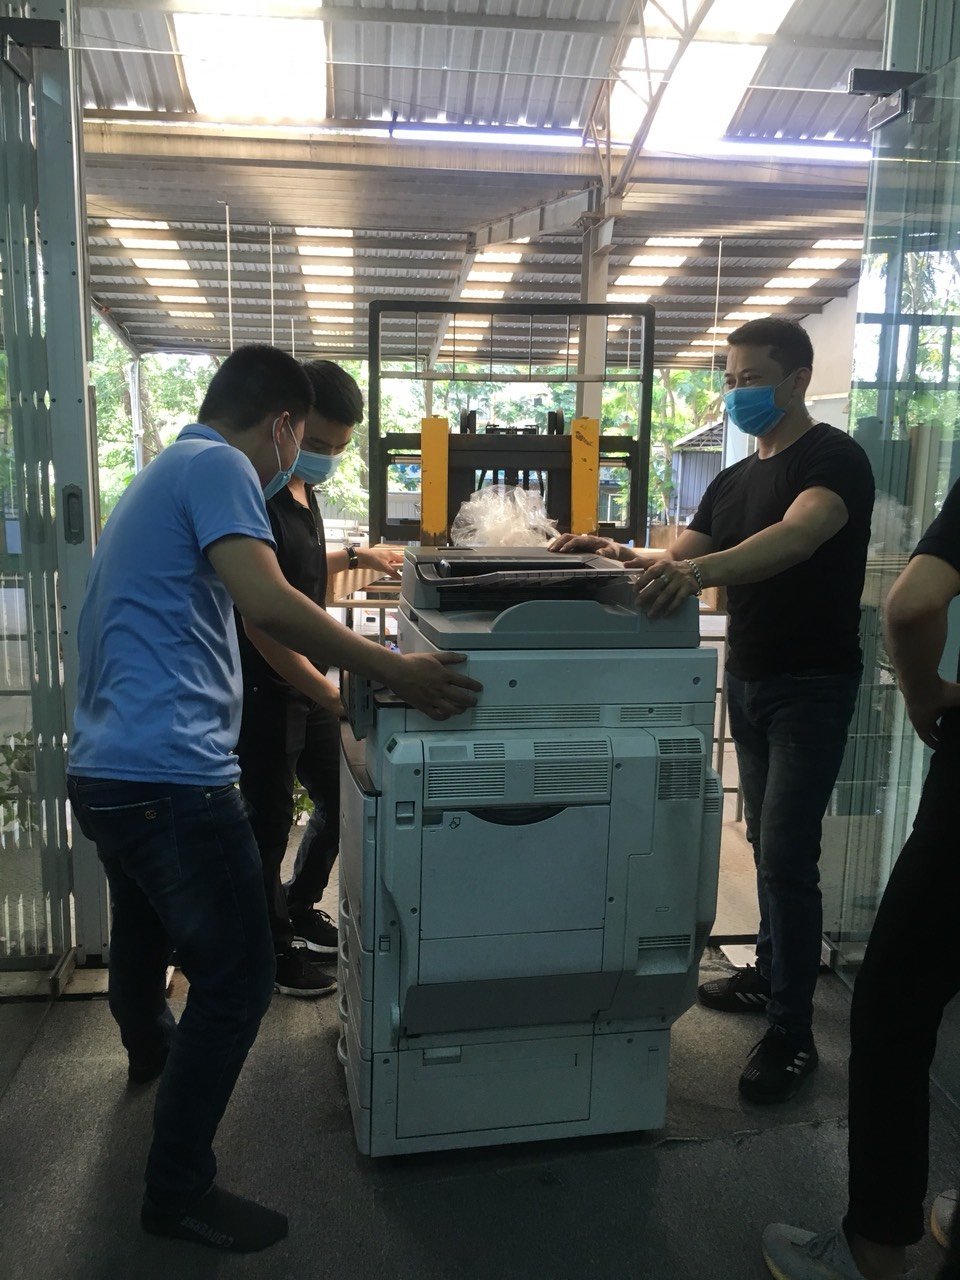 Báo giá Cho thuê máy photocopy tại Hà Nội chỉ từ 500k